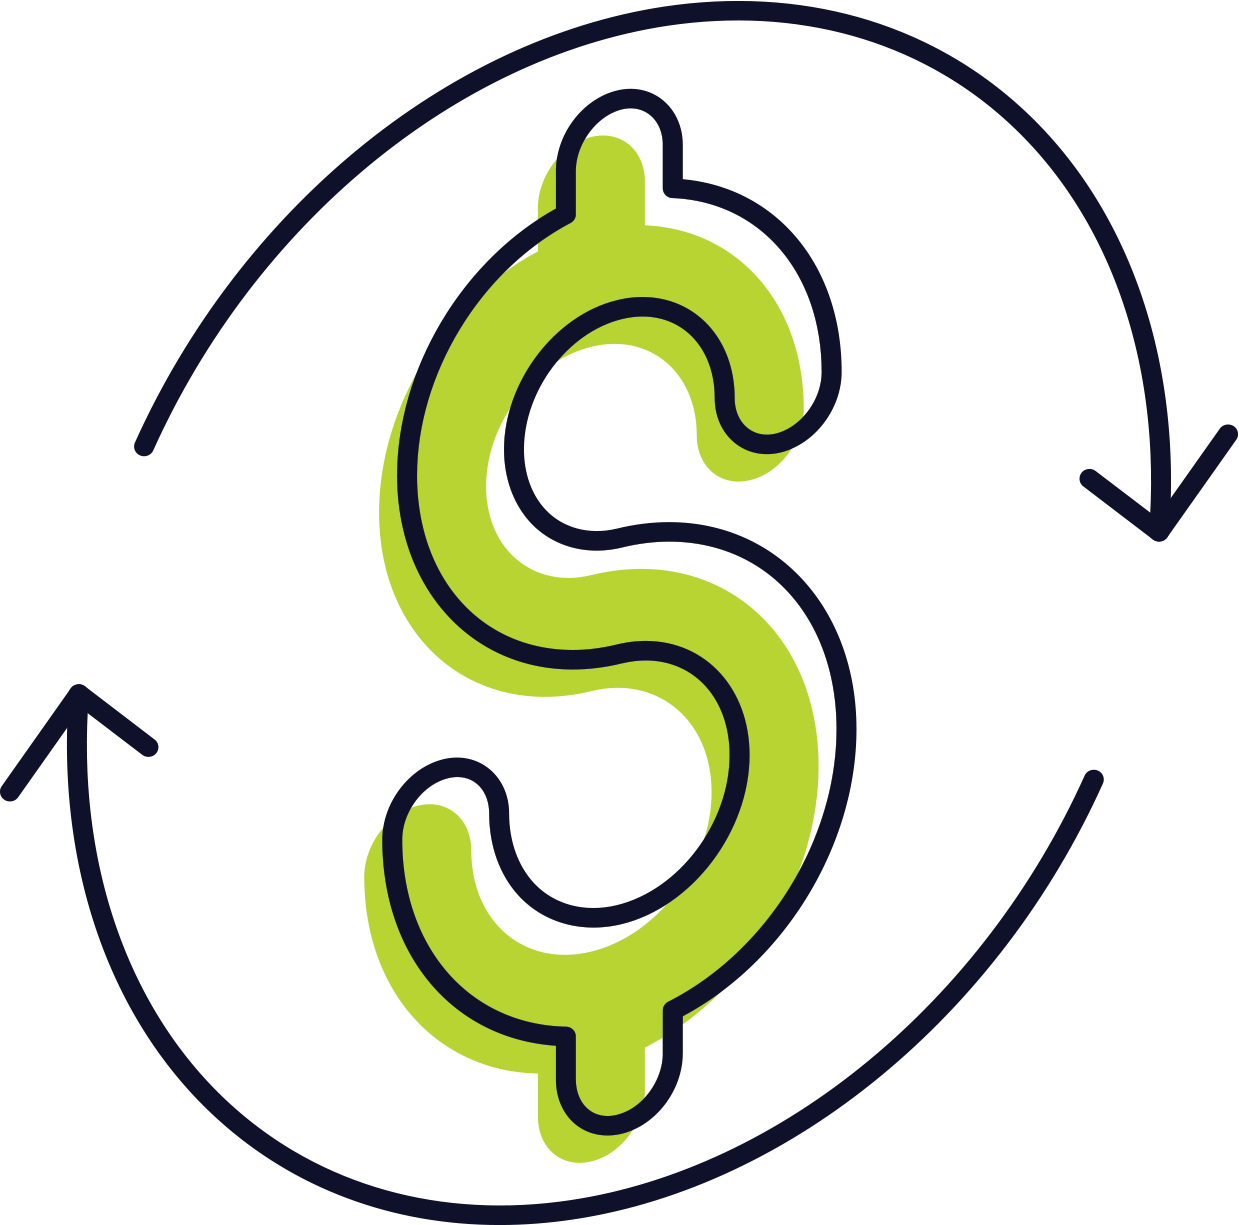 circulating dollar symbol